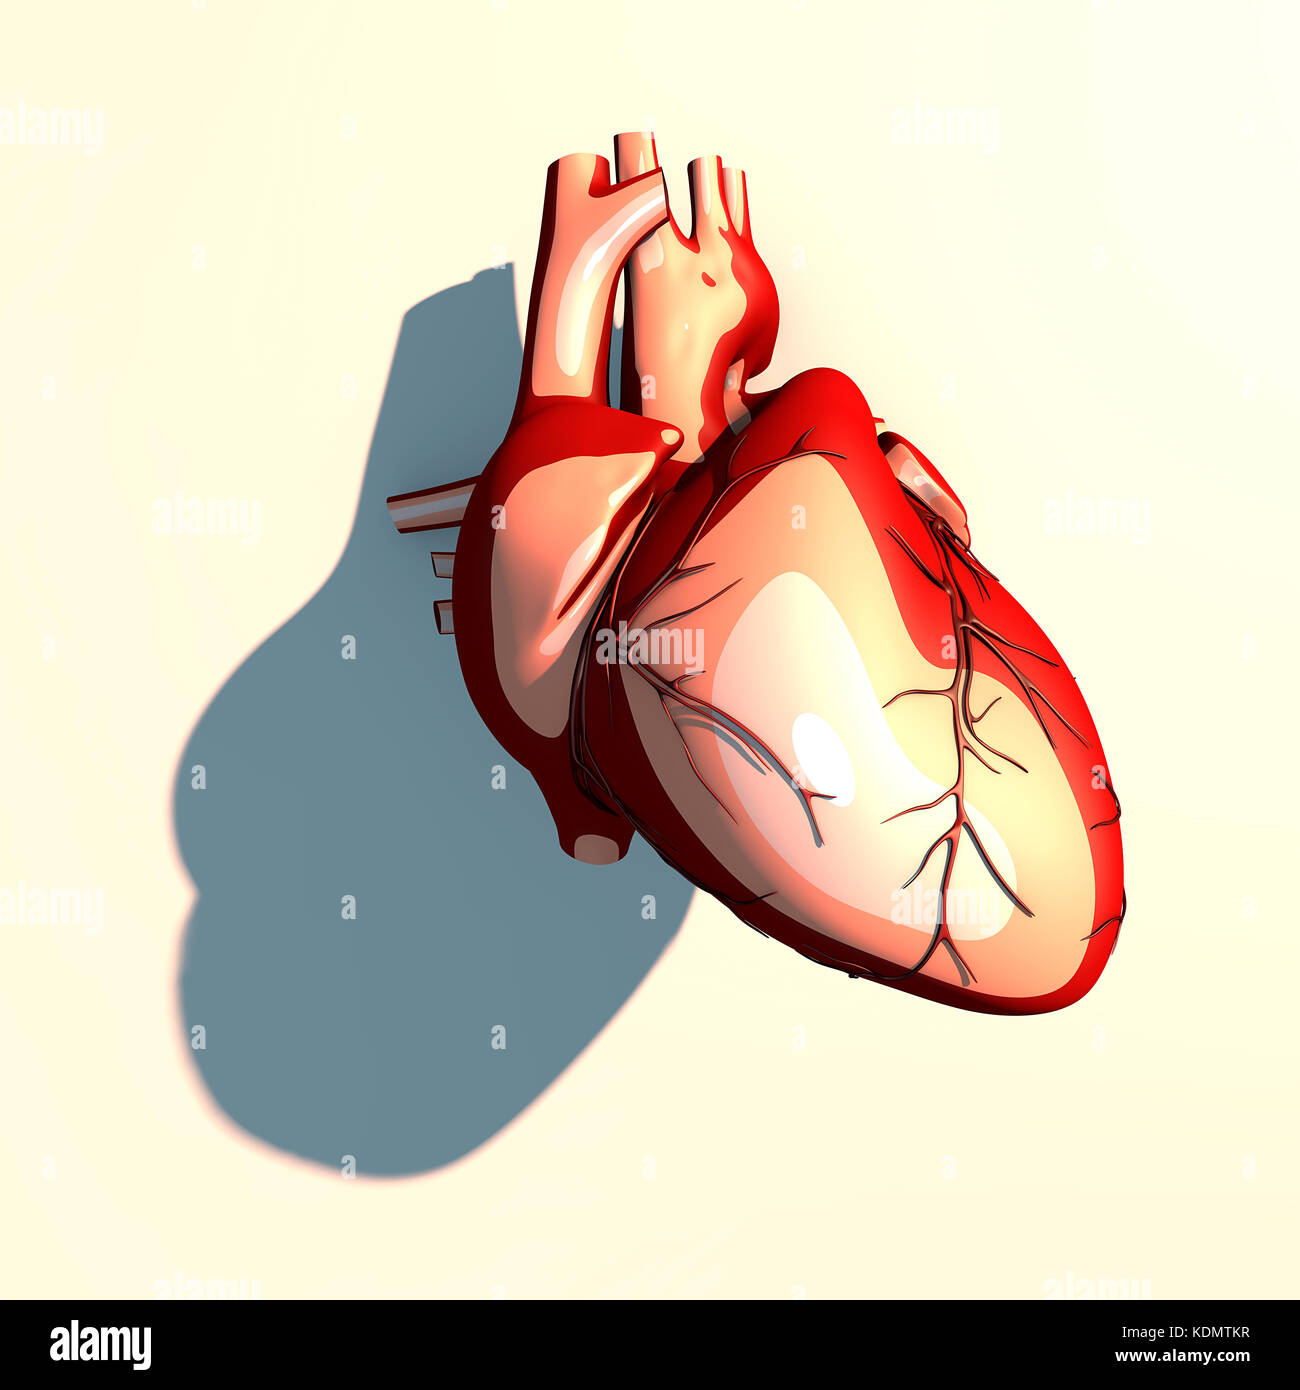 Il cuore è un organo muscolare, che pompa il sangue attraverso i vasi sanguigni del sistema circolatorio, lunga ombra, rendering 3d. Foto Stock